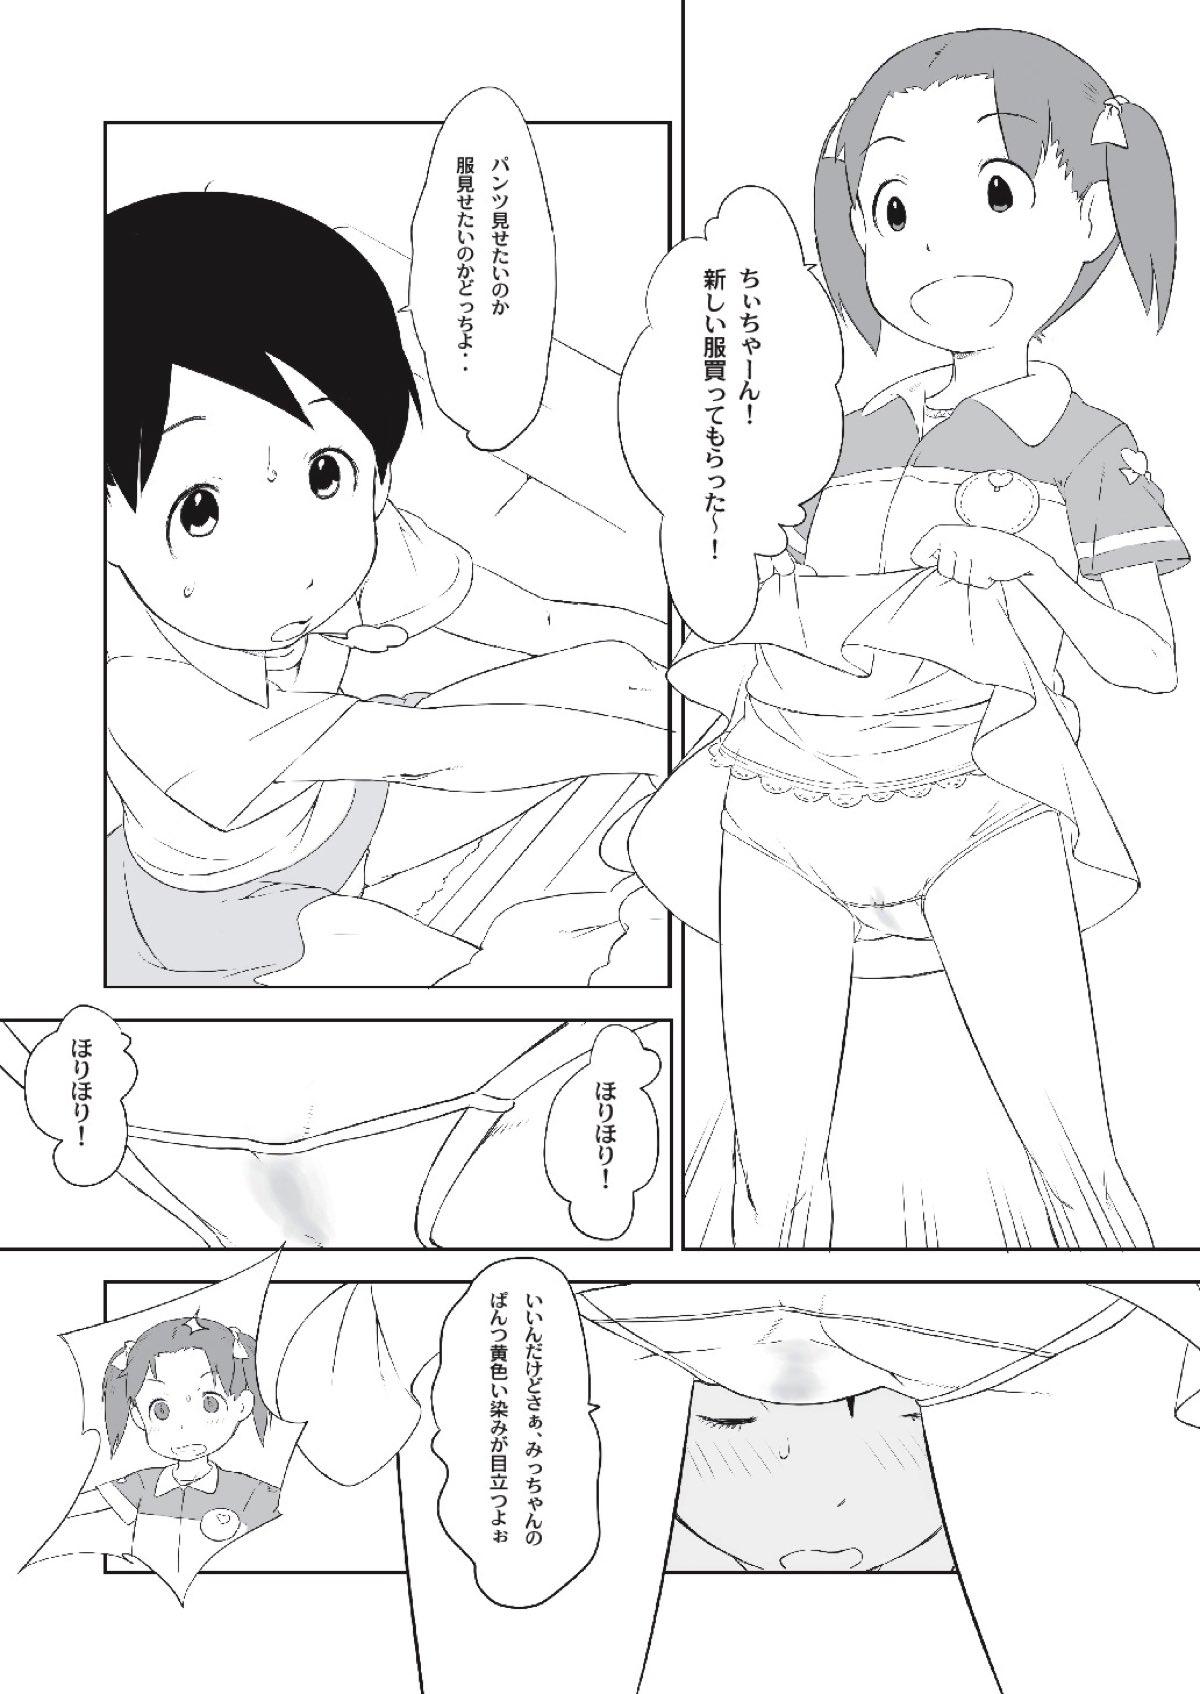 Perfect Butt Chii-chan no Oshare Erabi - Ichigo mashimaro Rola - Page 5